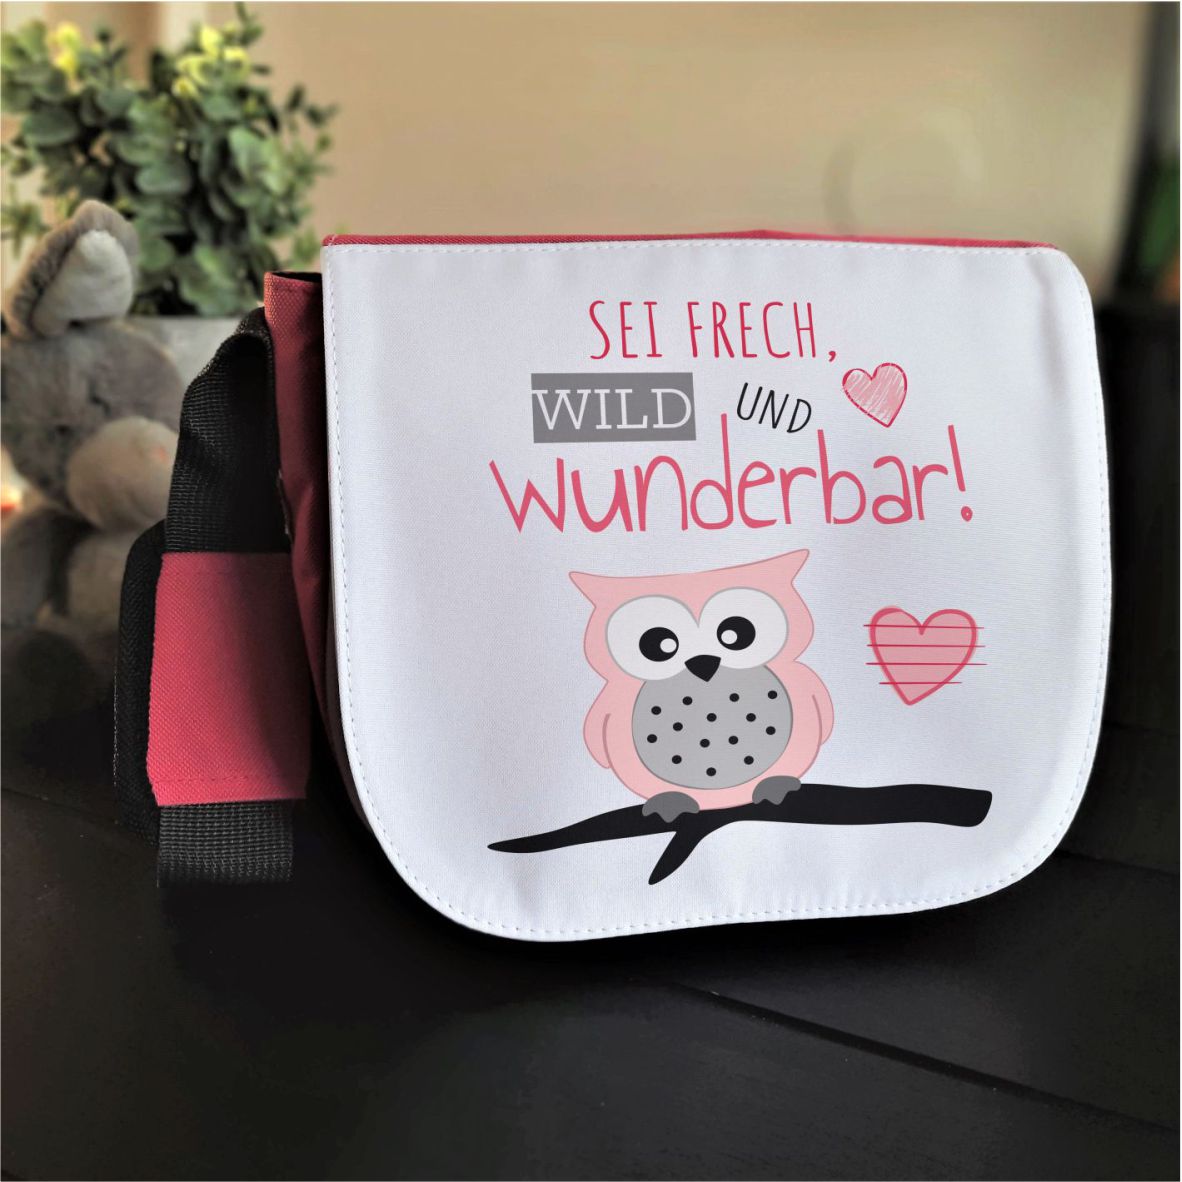 Kindergartentasche "Sei frech, wild und wunderbar", pink